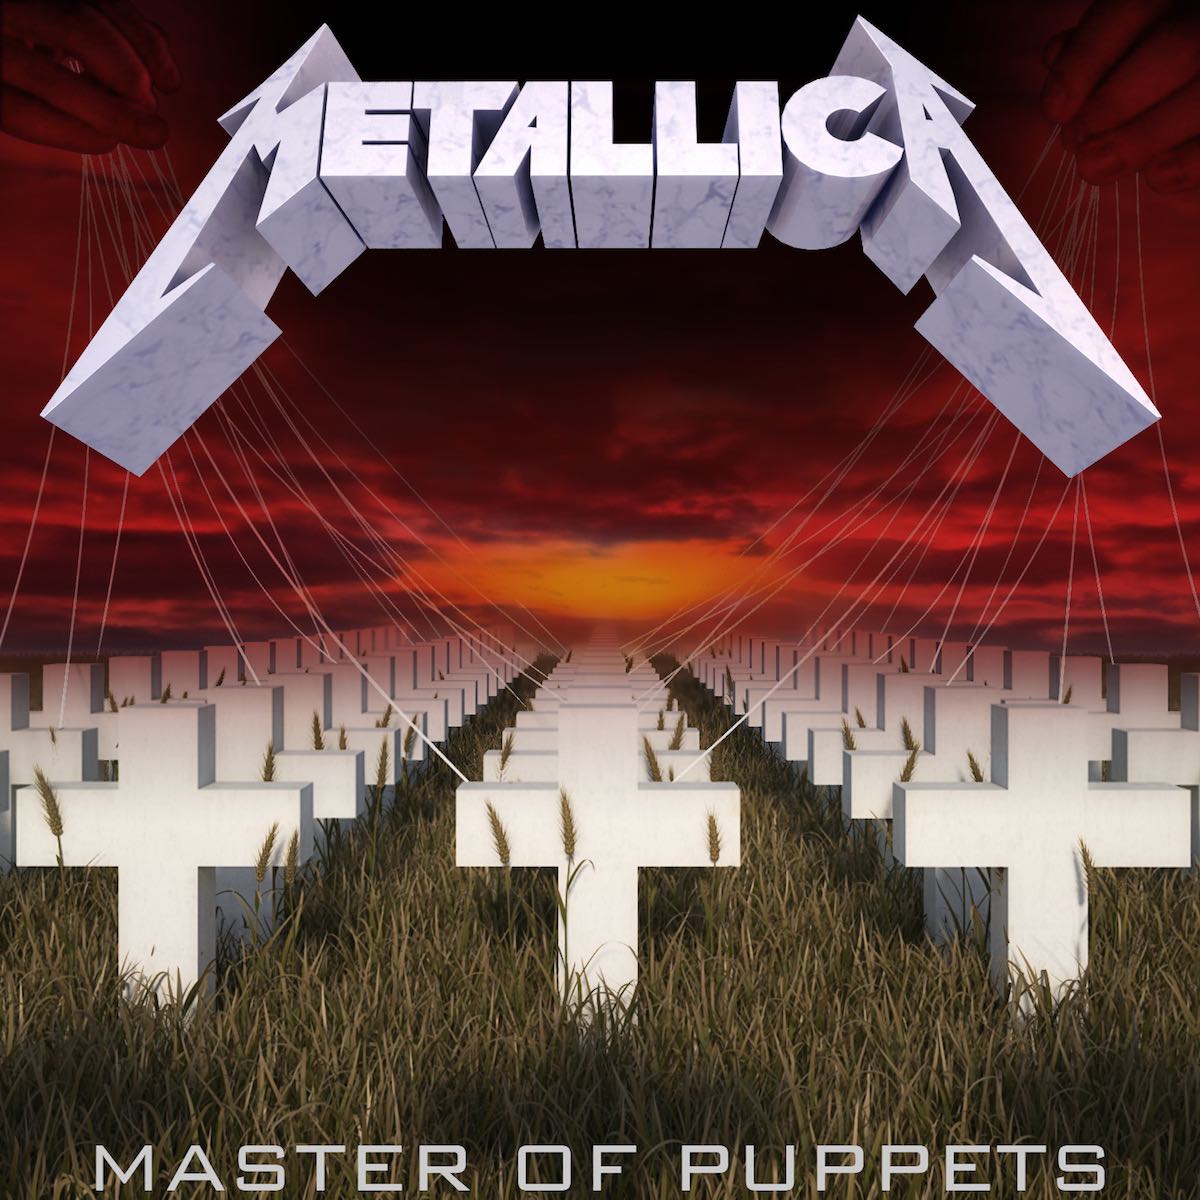 Культовому альбому Metallica — Master of Puppets уже 35 лет! Слушайте этот и другие альбомы группы в Apple Music